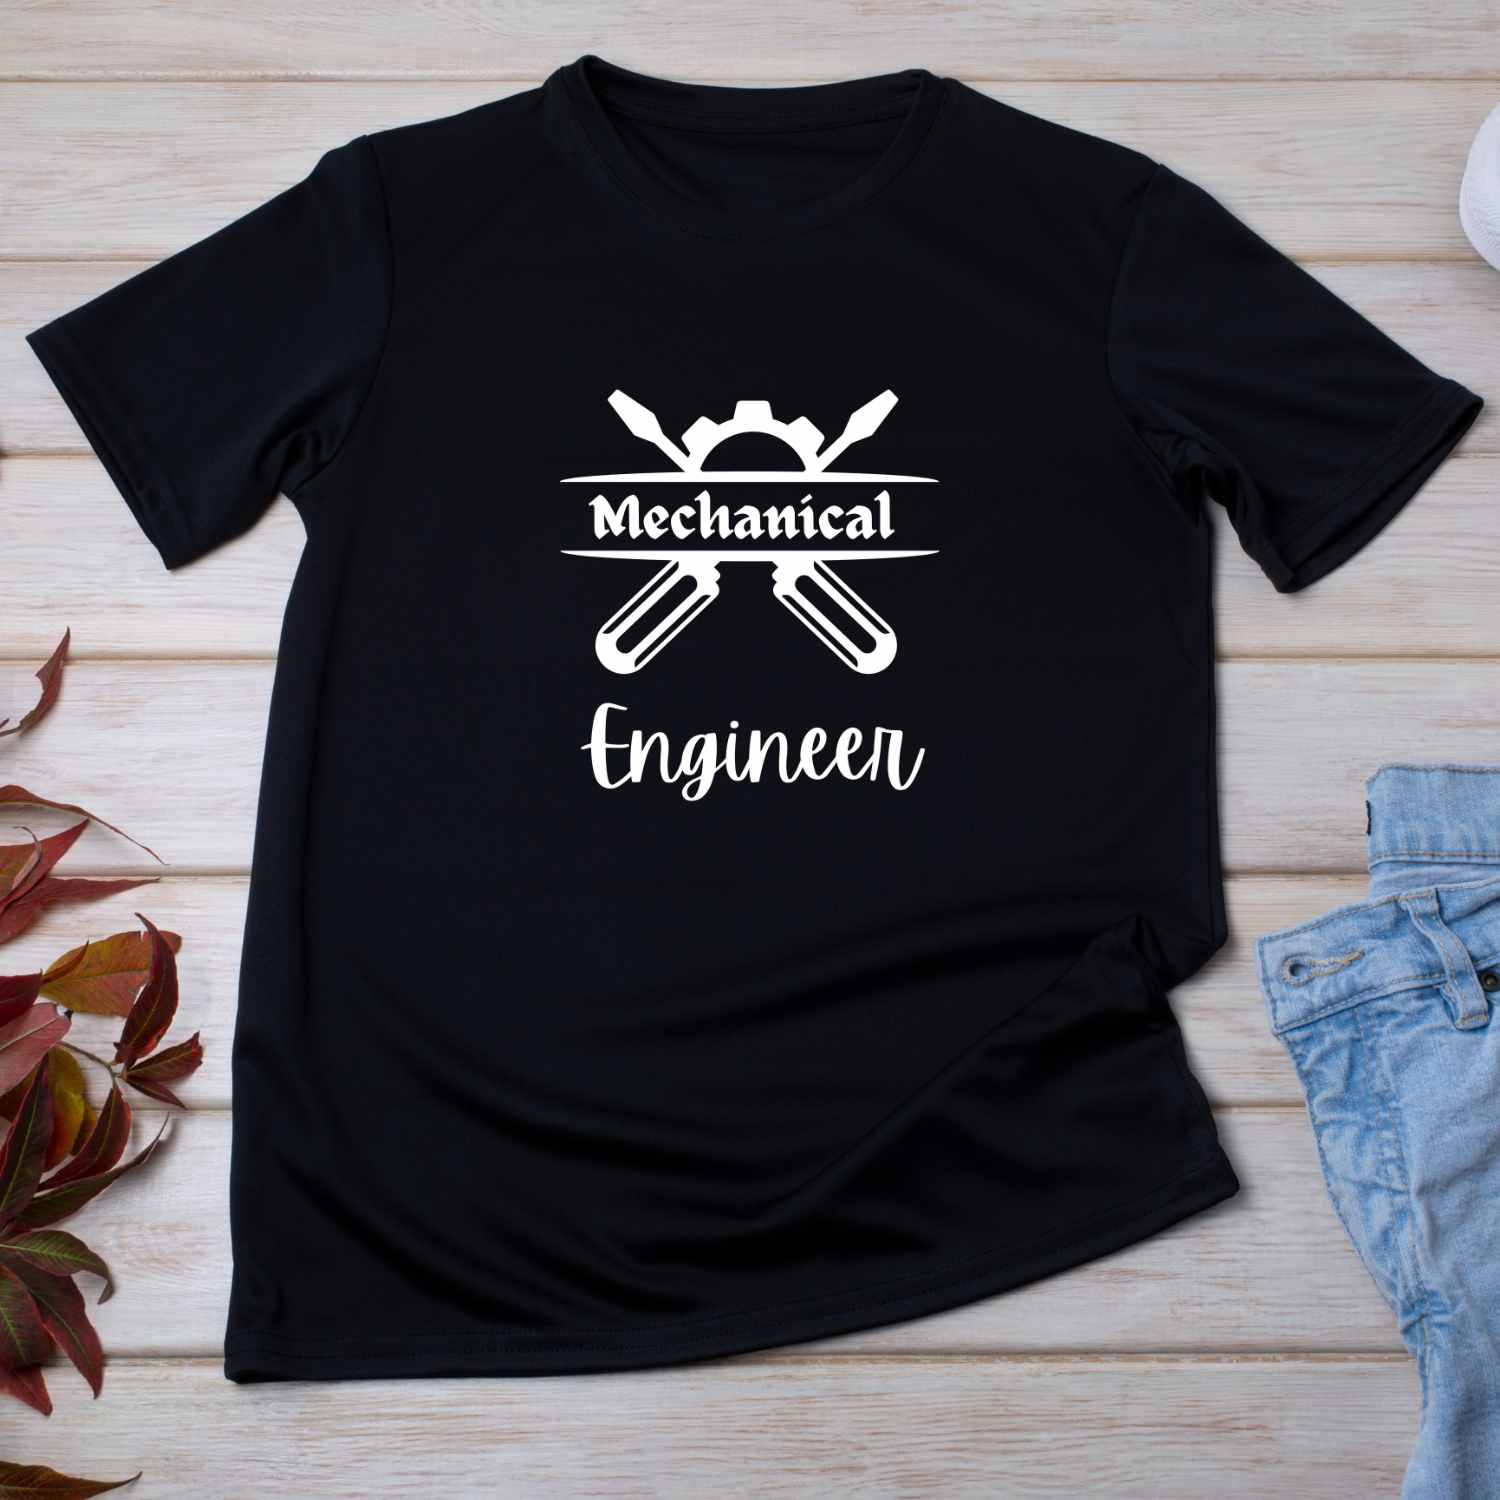 Mechanical Engineer T-shirt Design